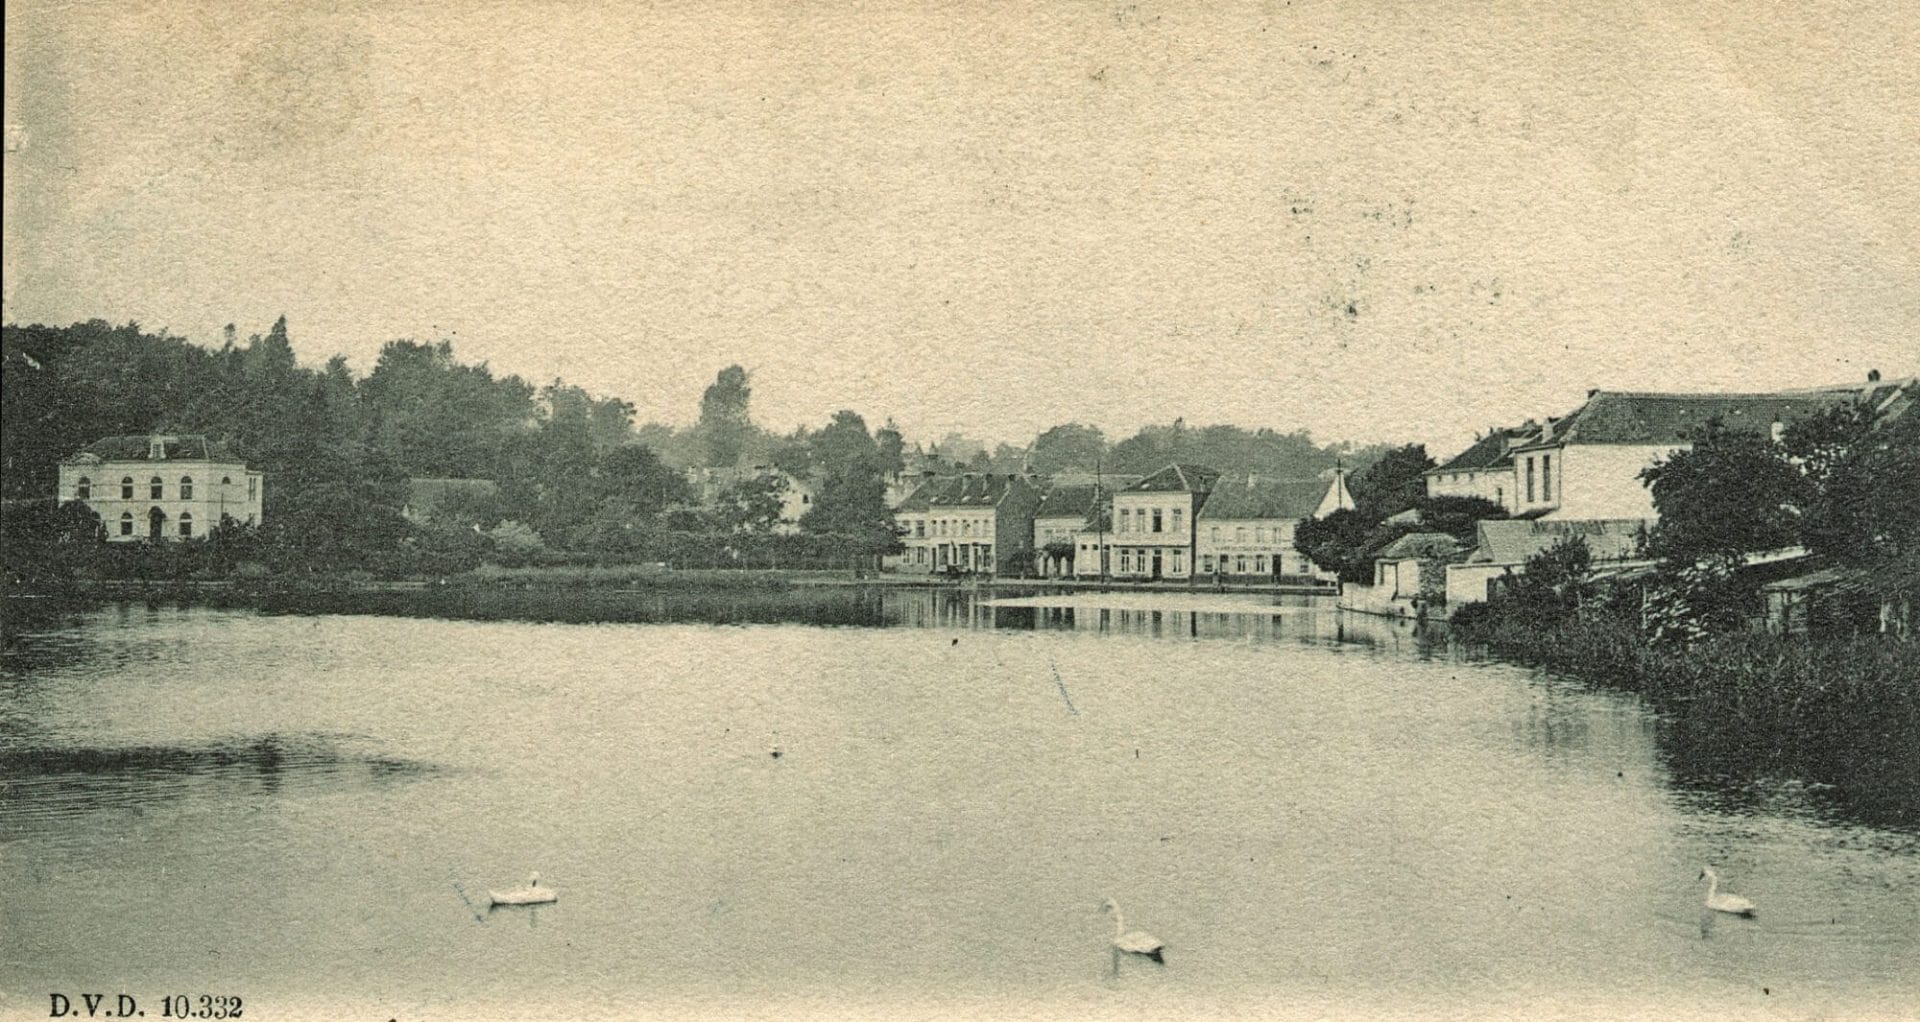 L'étang de Boitsfort. Dans le fond, la chaussée de La Hulpe et les hôtels - Carte postale Ed. Dero, vers 1900-04